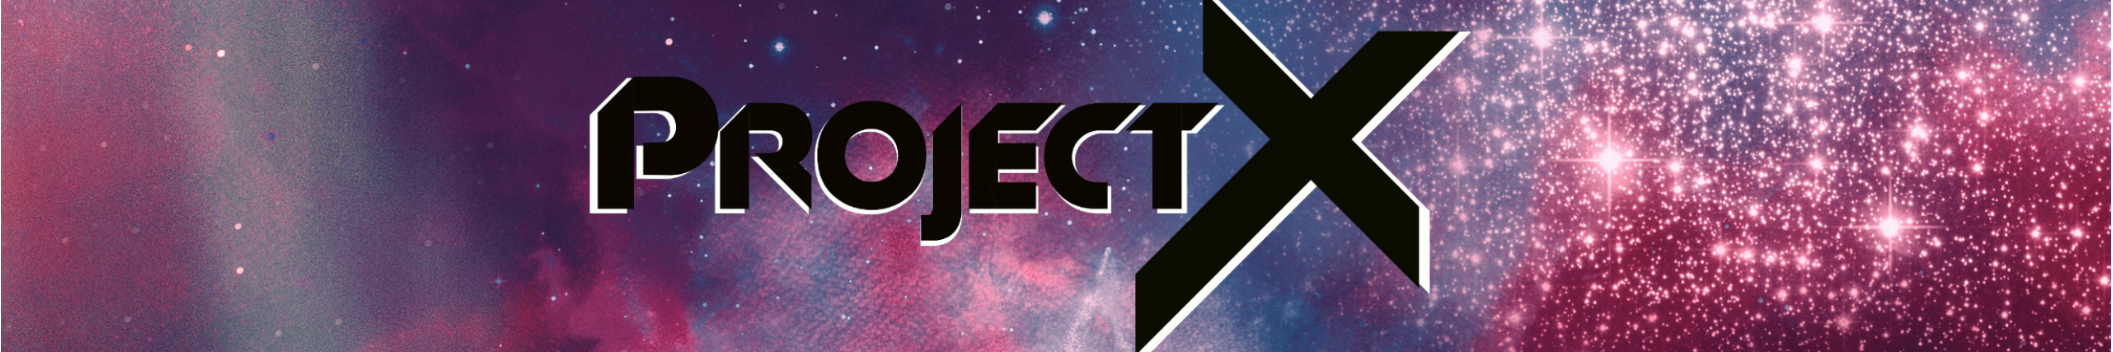 ProjectX Sounds